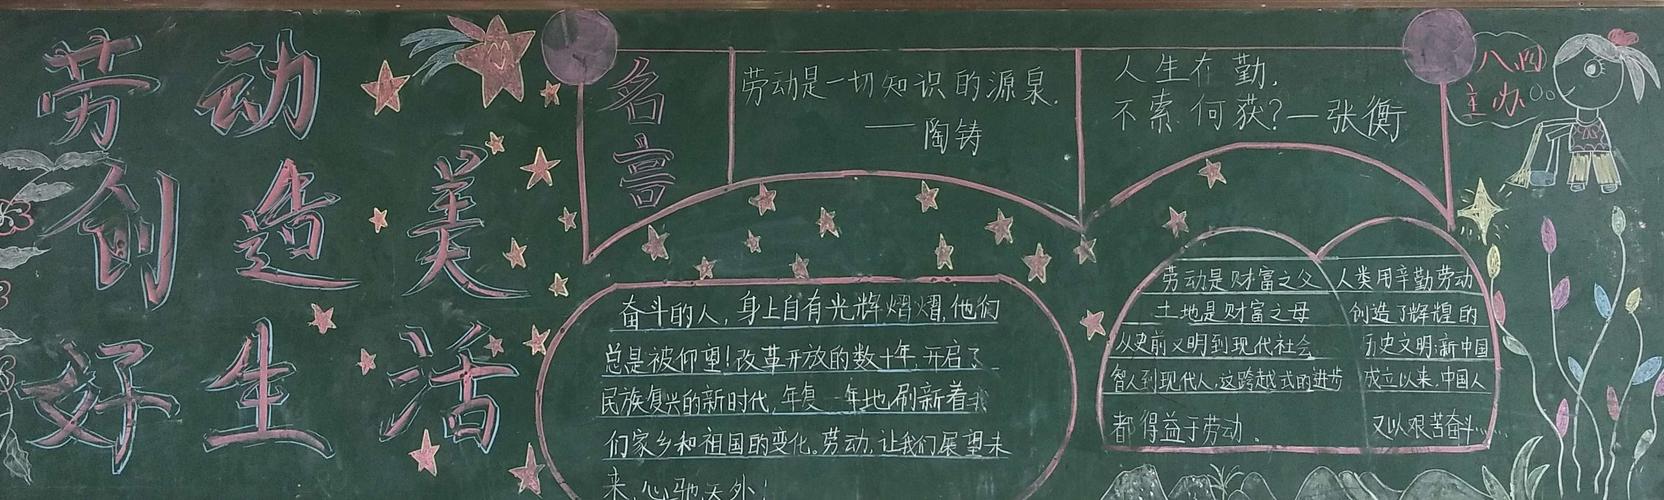 杨楼镇中学美好生活劳动创造黑板报展示